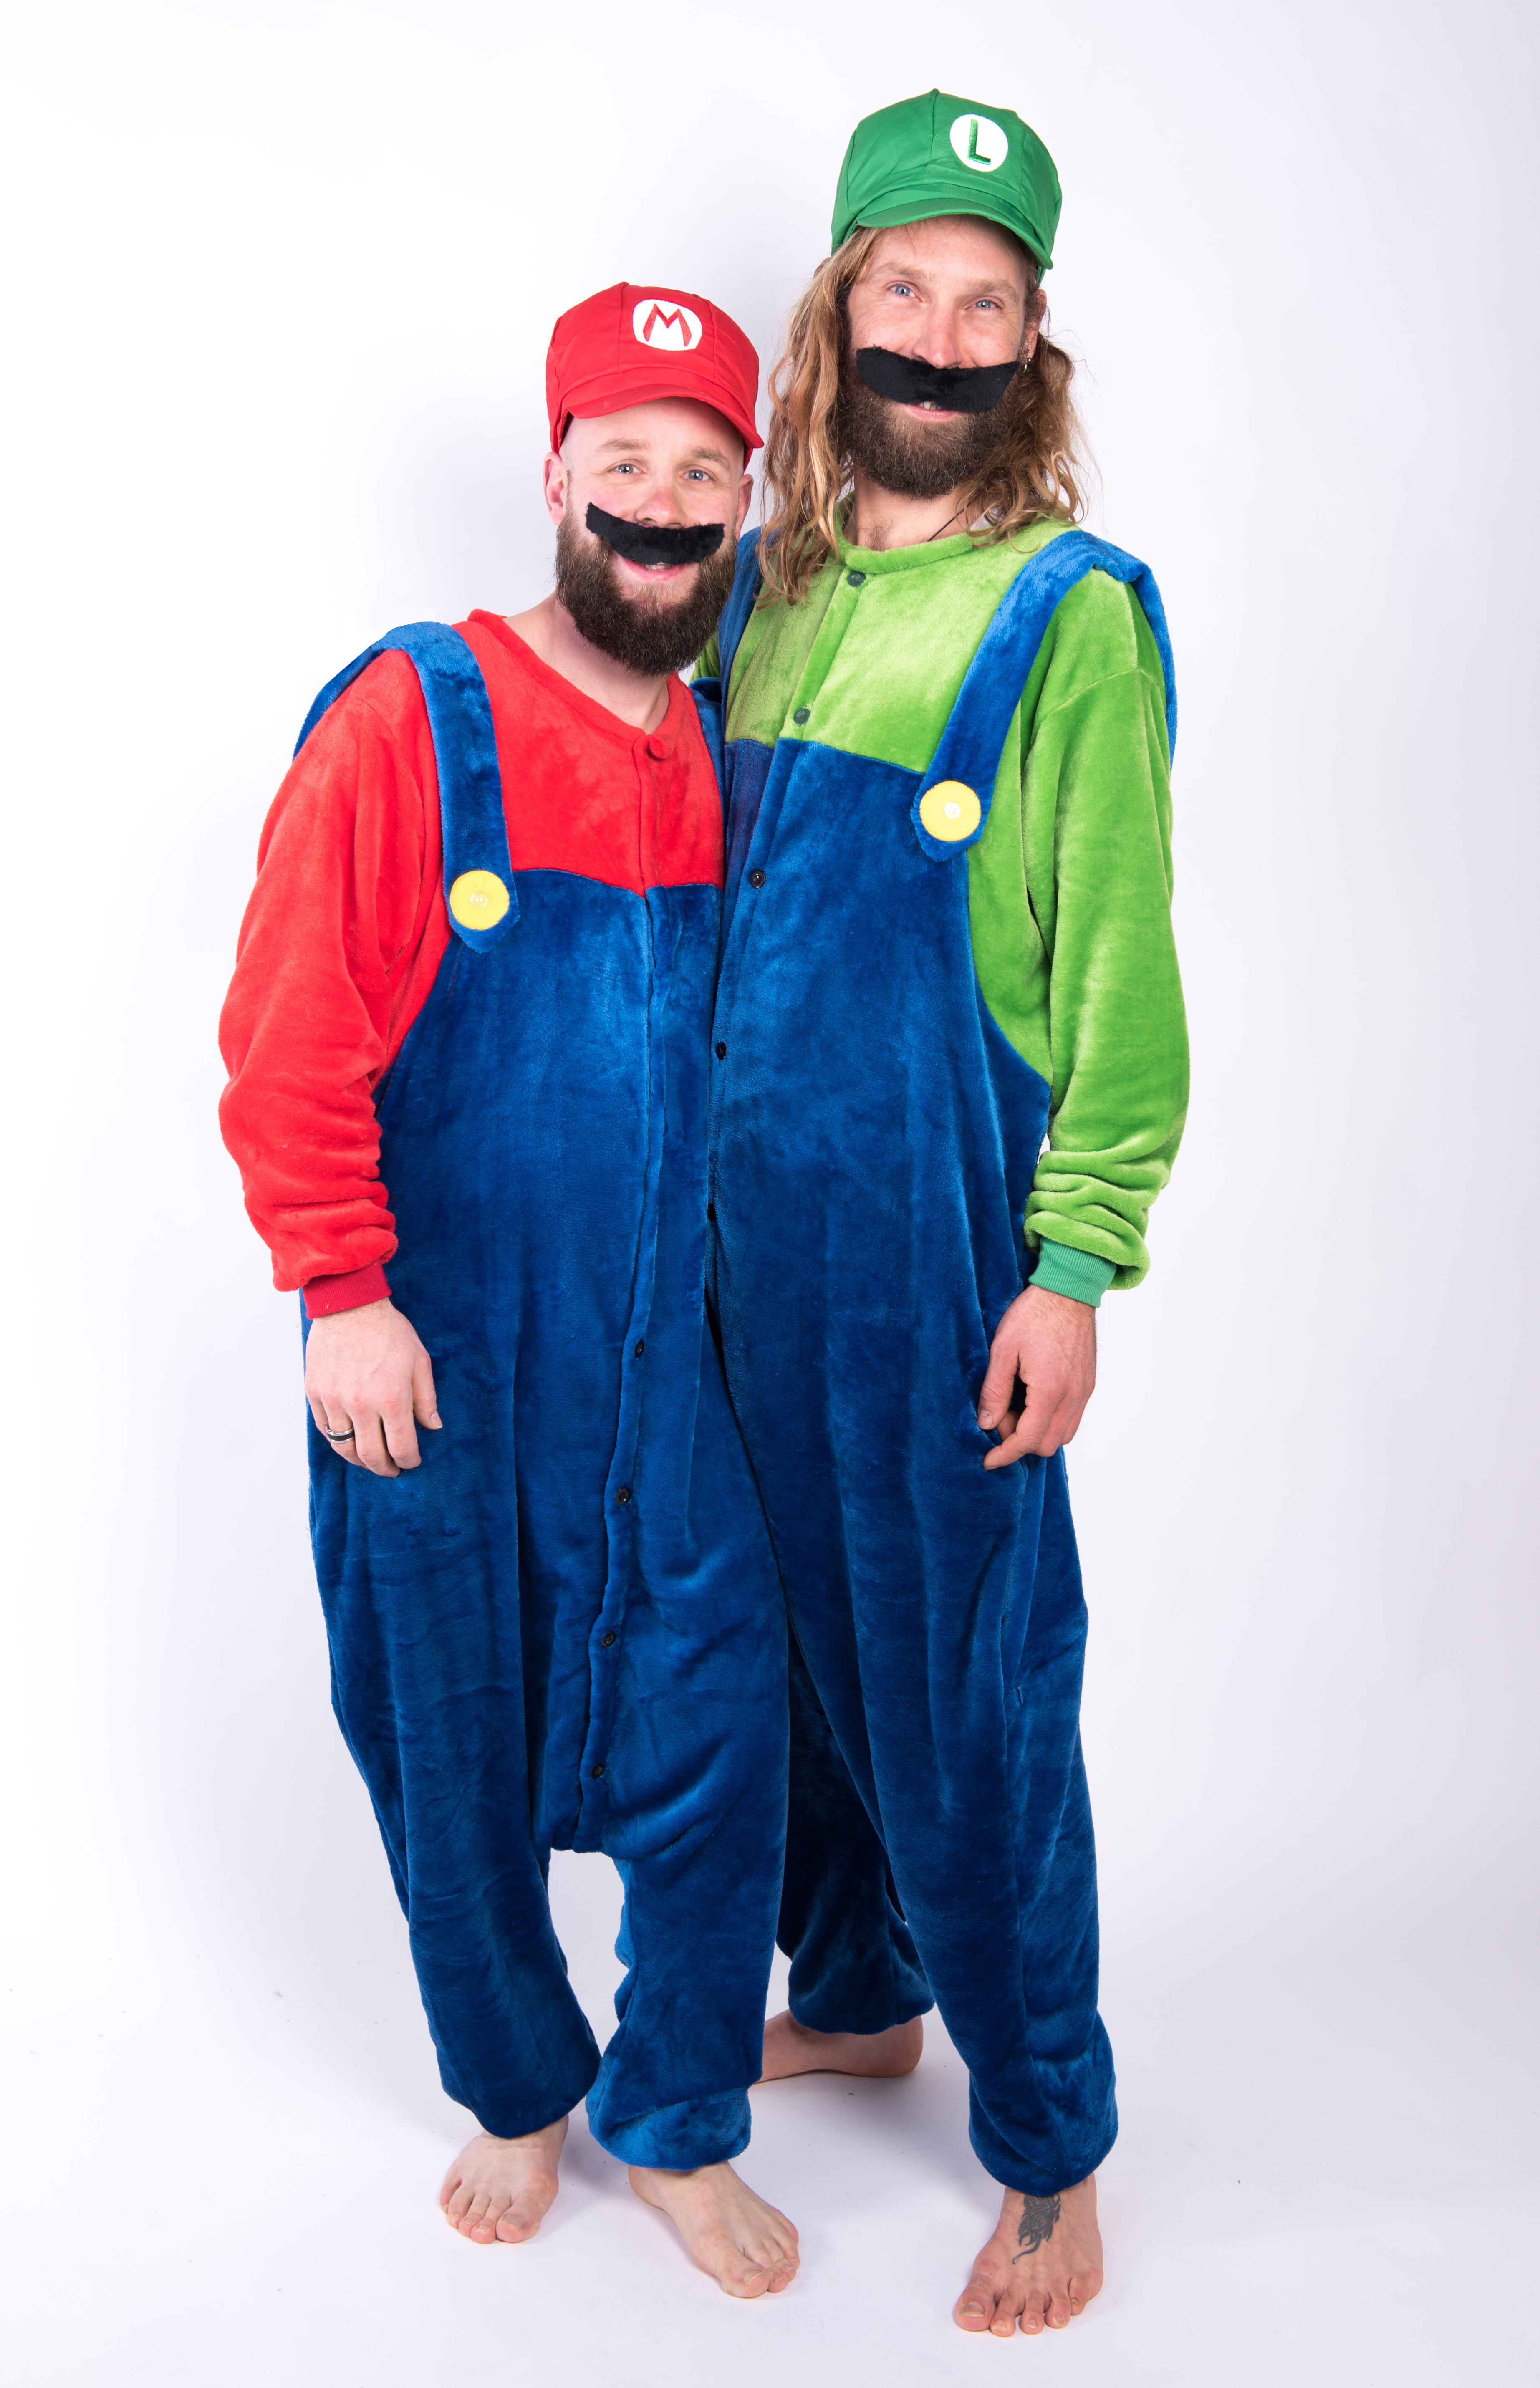 animatie invoegen Pessimist Super Mario onesie kostuum pak kopen? Vanaf €29,95 - FeestinjeBeest.nl!